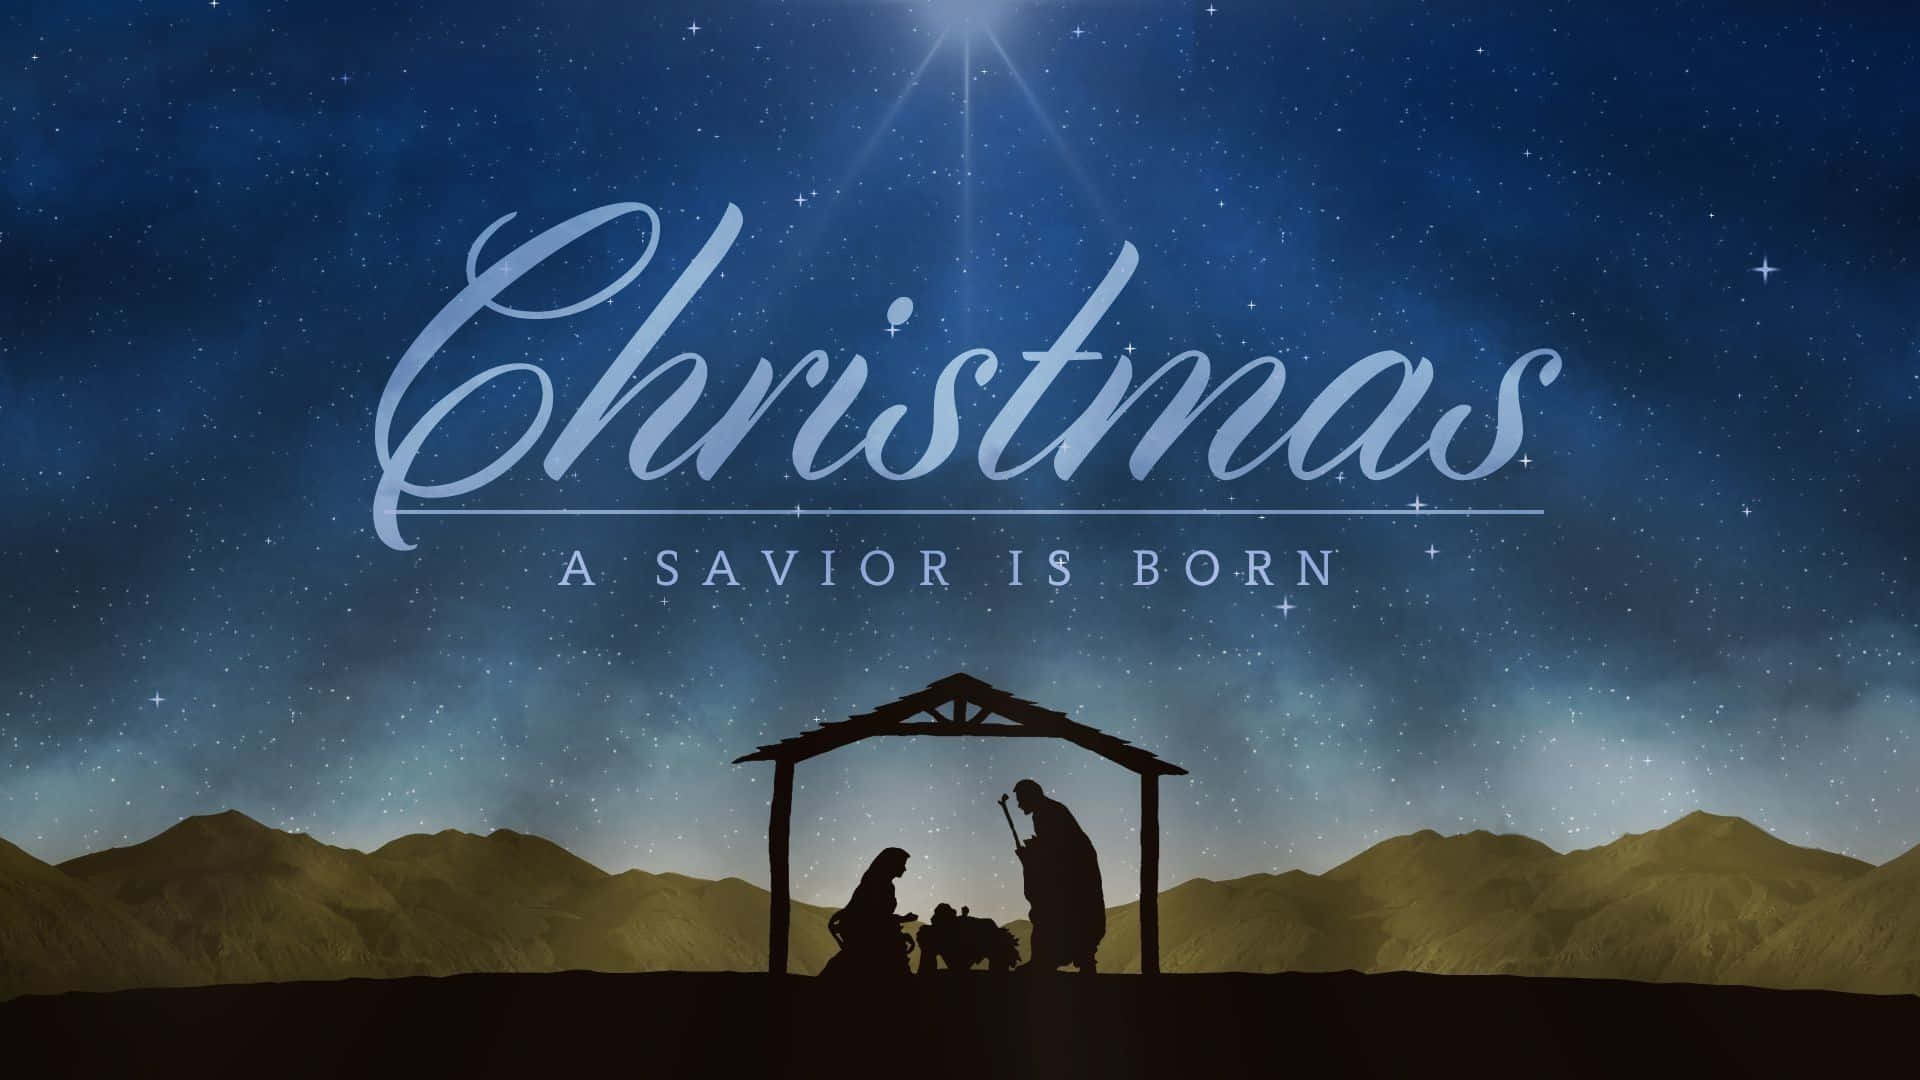 Lascena Della Natività - Celebra La Nascita Di Gesù